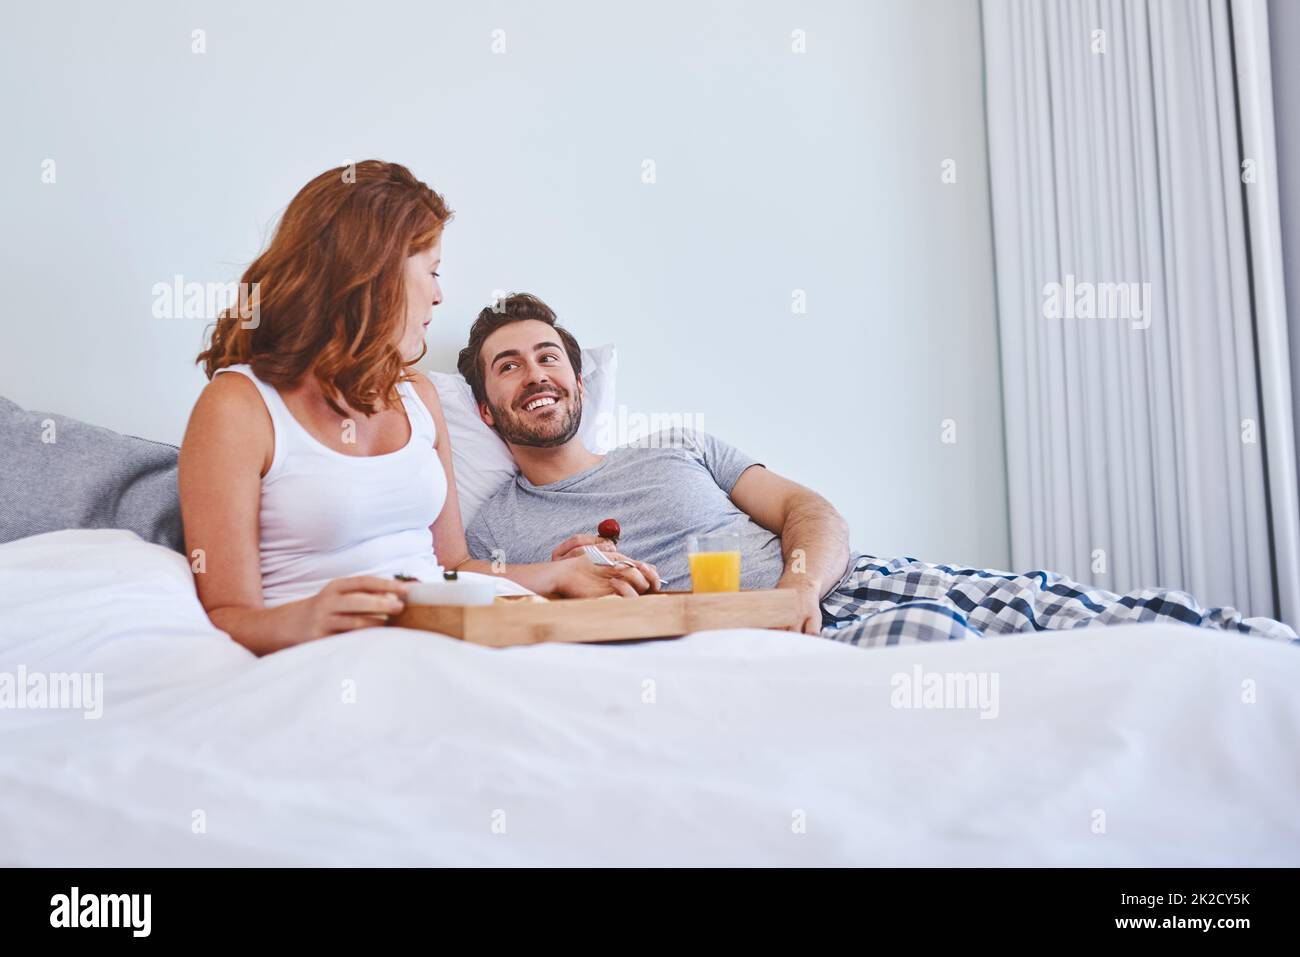 Commencez la journée avec de la nourriture et de l'amour. Photo d'un couple prenant le petit déjeuner au lit ensemble à la maison. Banque D'Images